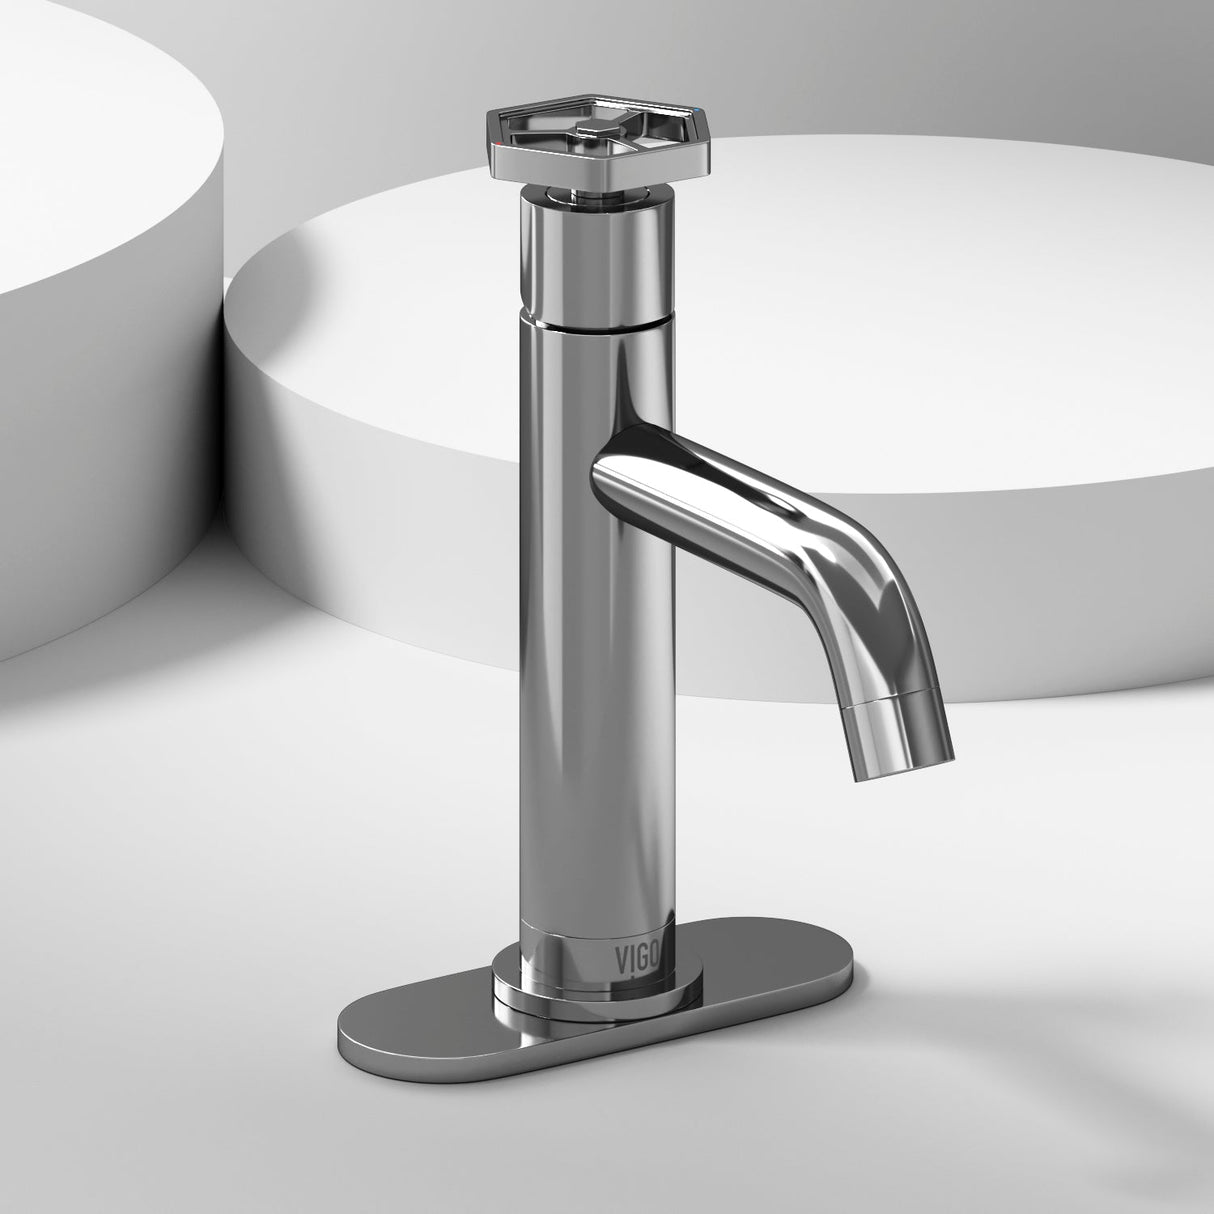 VIGO Ruxton Pinnacle 1-Handle Single Hole Bathroom Faucet with Deck Plate in Chrome VG01050CHK1